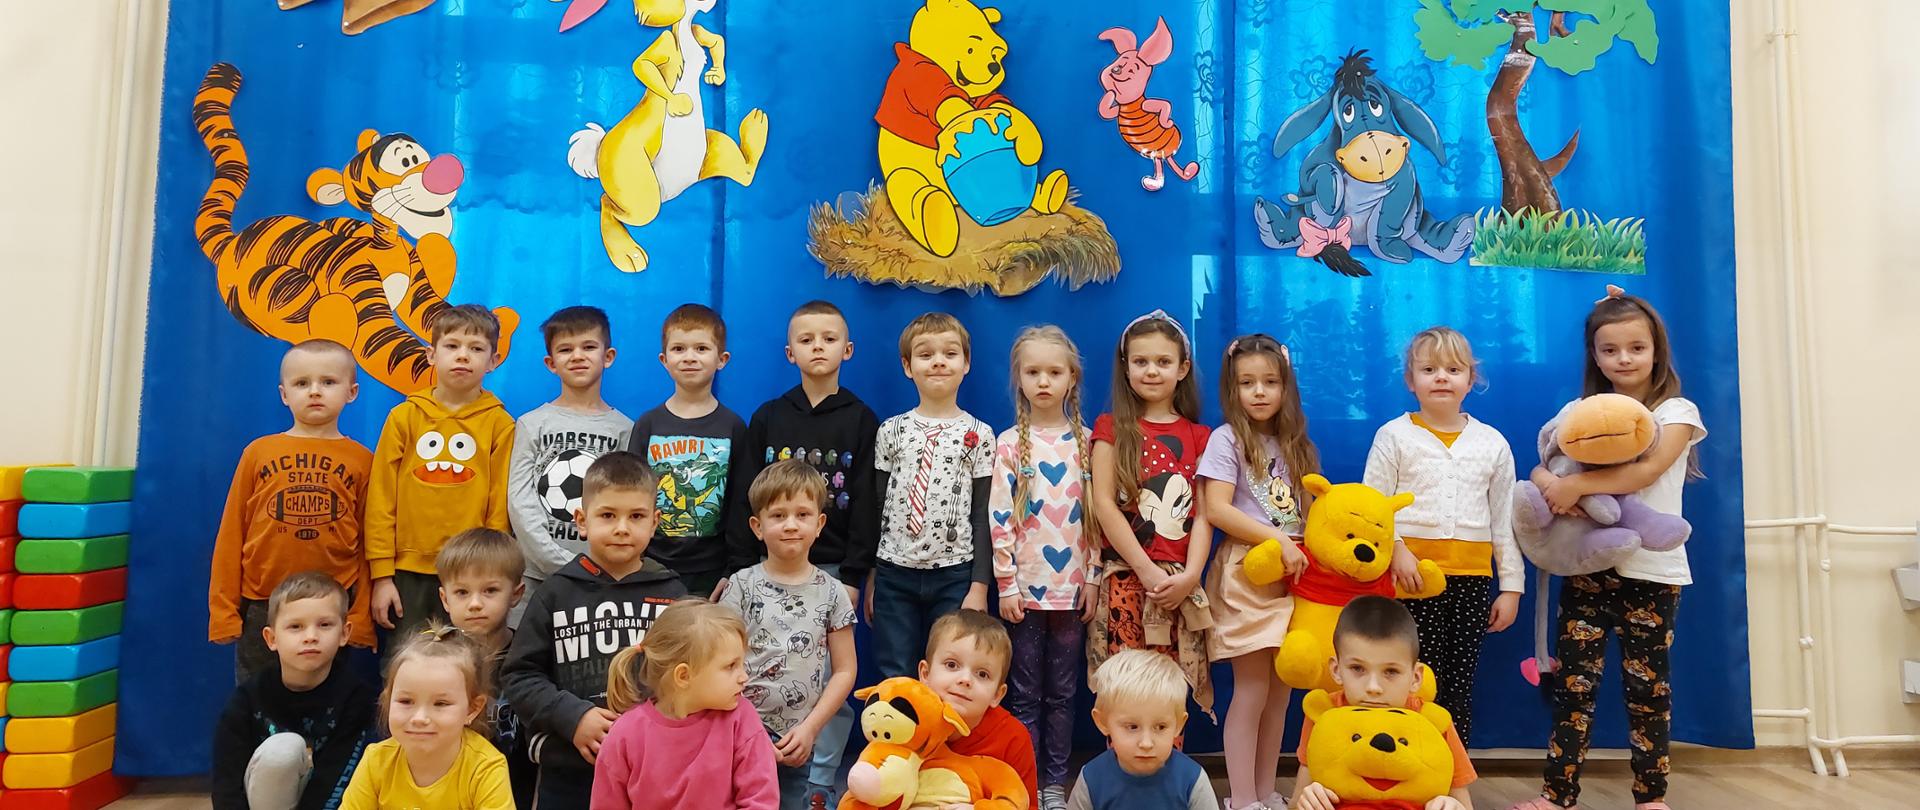 Grupowe zdjęcie przedszkolaków na tle dekoracji z przyniesionymi maskotkami Kubusia Puchatka, Tygryska oraz Kłapouchego. 